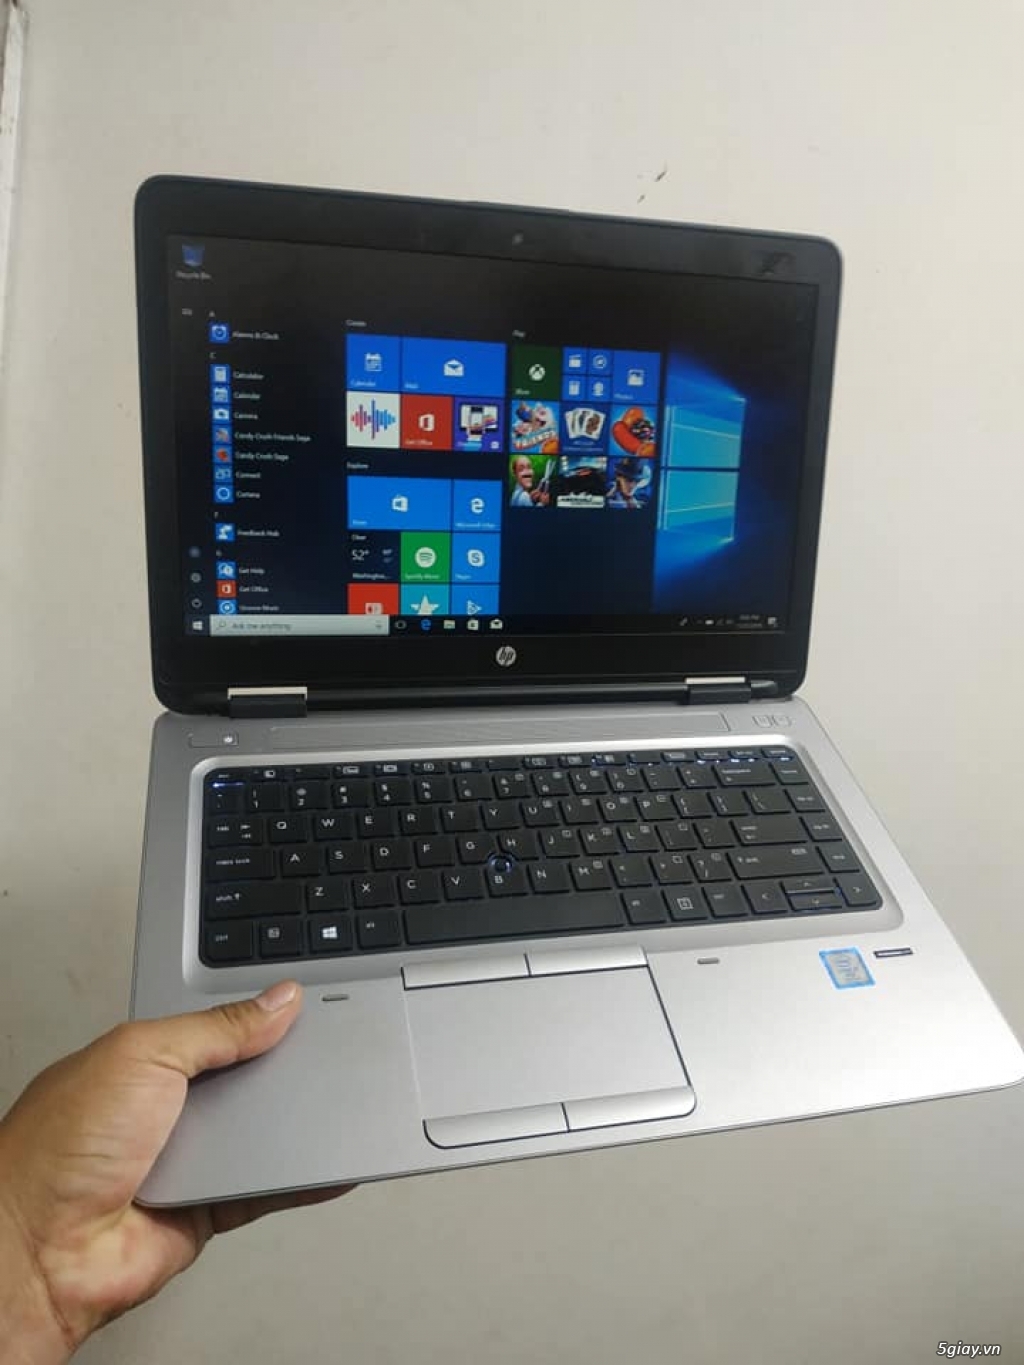 Laptop Hp Probook 640 G3 - Hàng xách tay USA